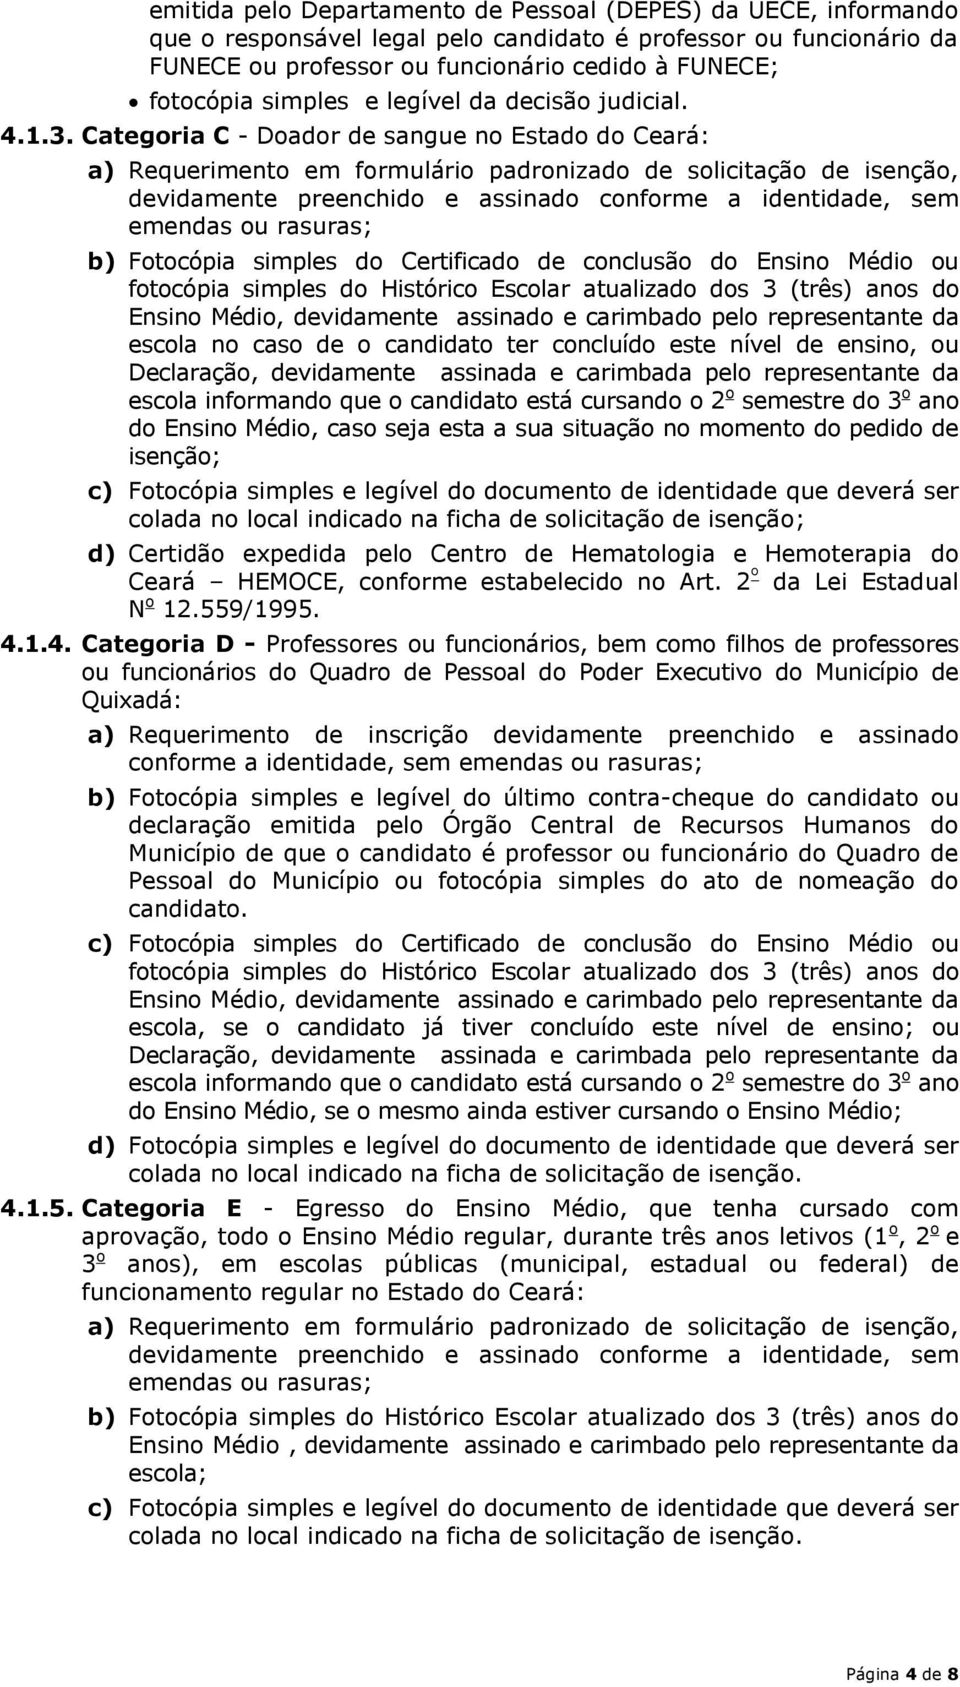 Categoria C - Doador de sangue no Estado do Ceará: a) Requerimento em formulário padronizado de solicitação de isenção, b) Fotocópia simples do Certificado de conclusão do Ensino Médio ou fotocópia